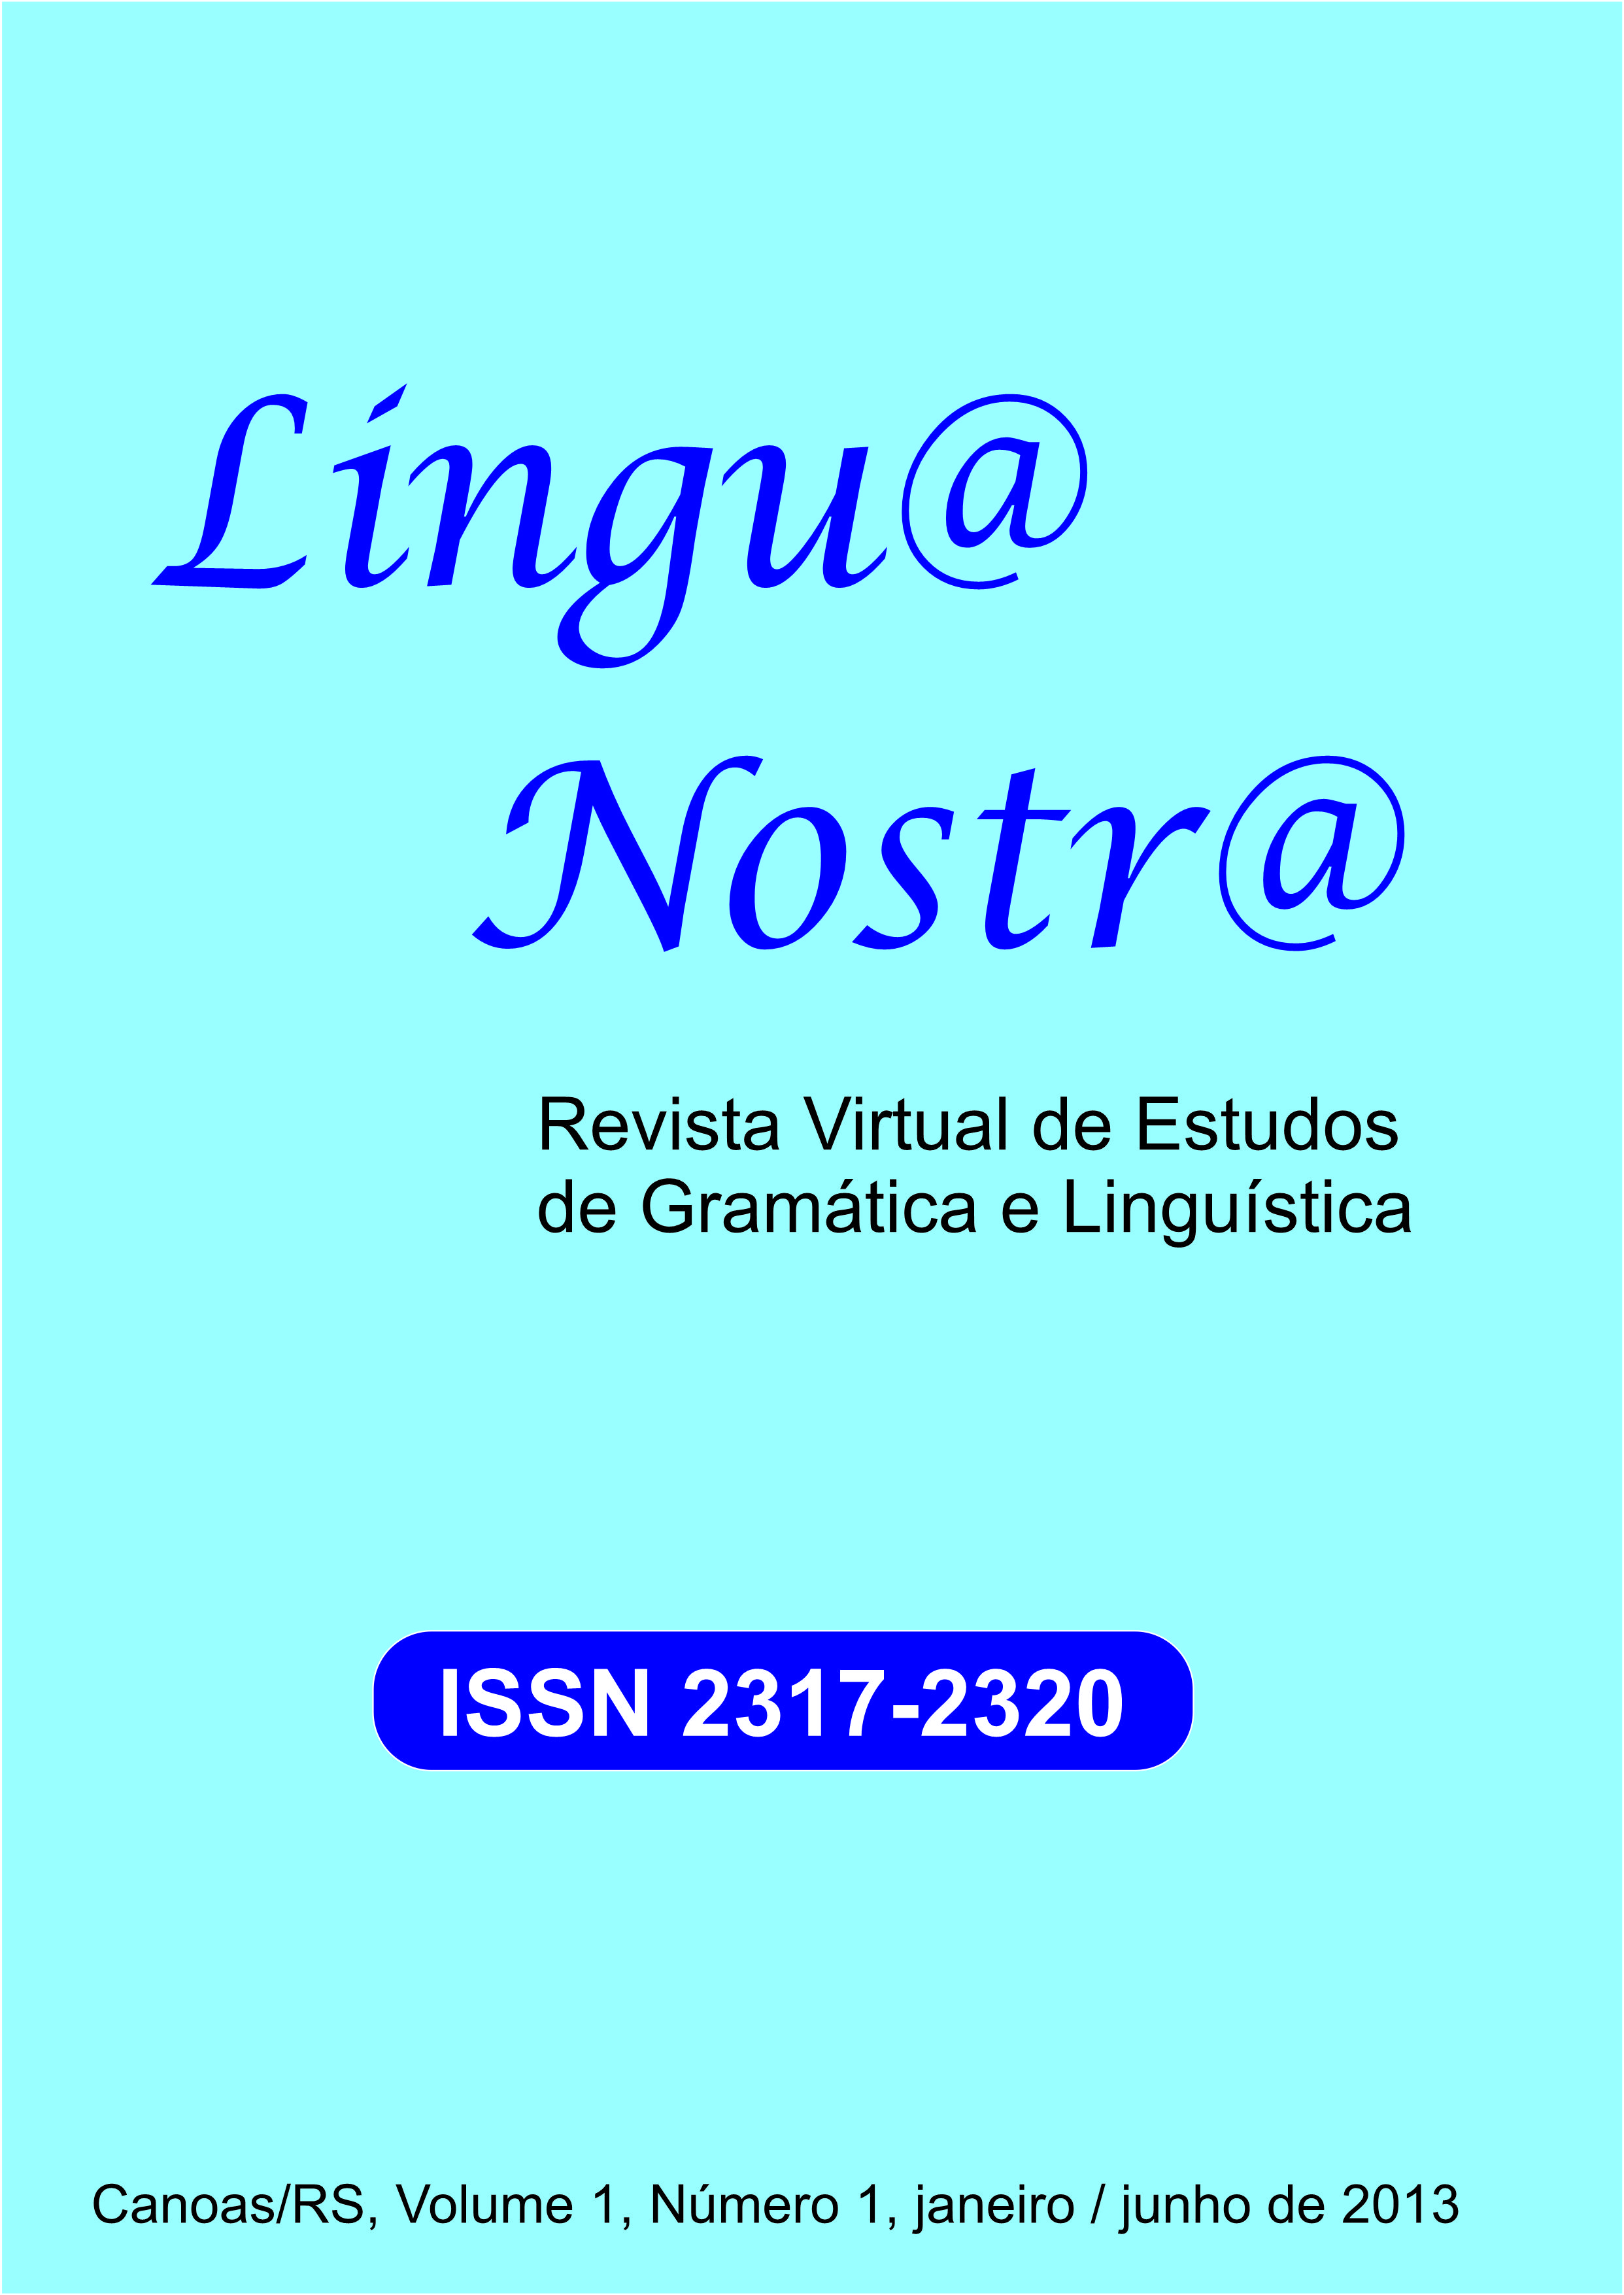 					View Vol. 1 No. 1 (2013): Primeira Edição da Revista Lingu@ Nostr@
				